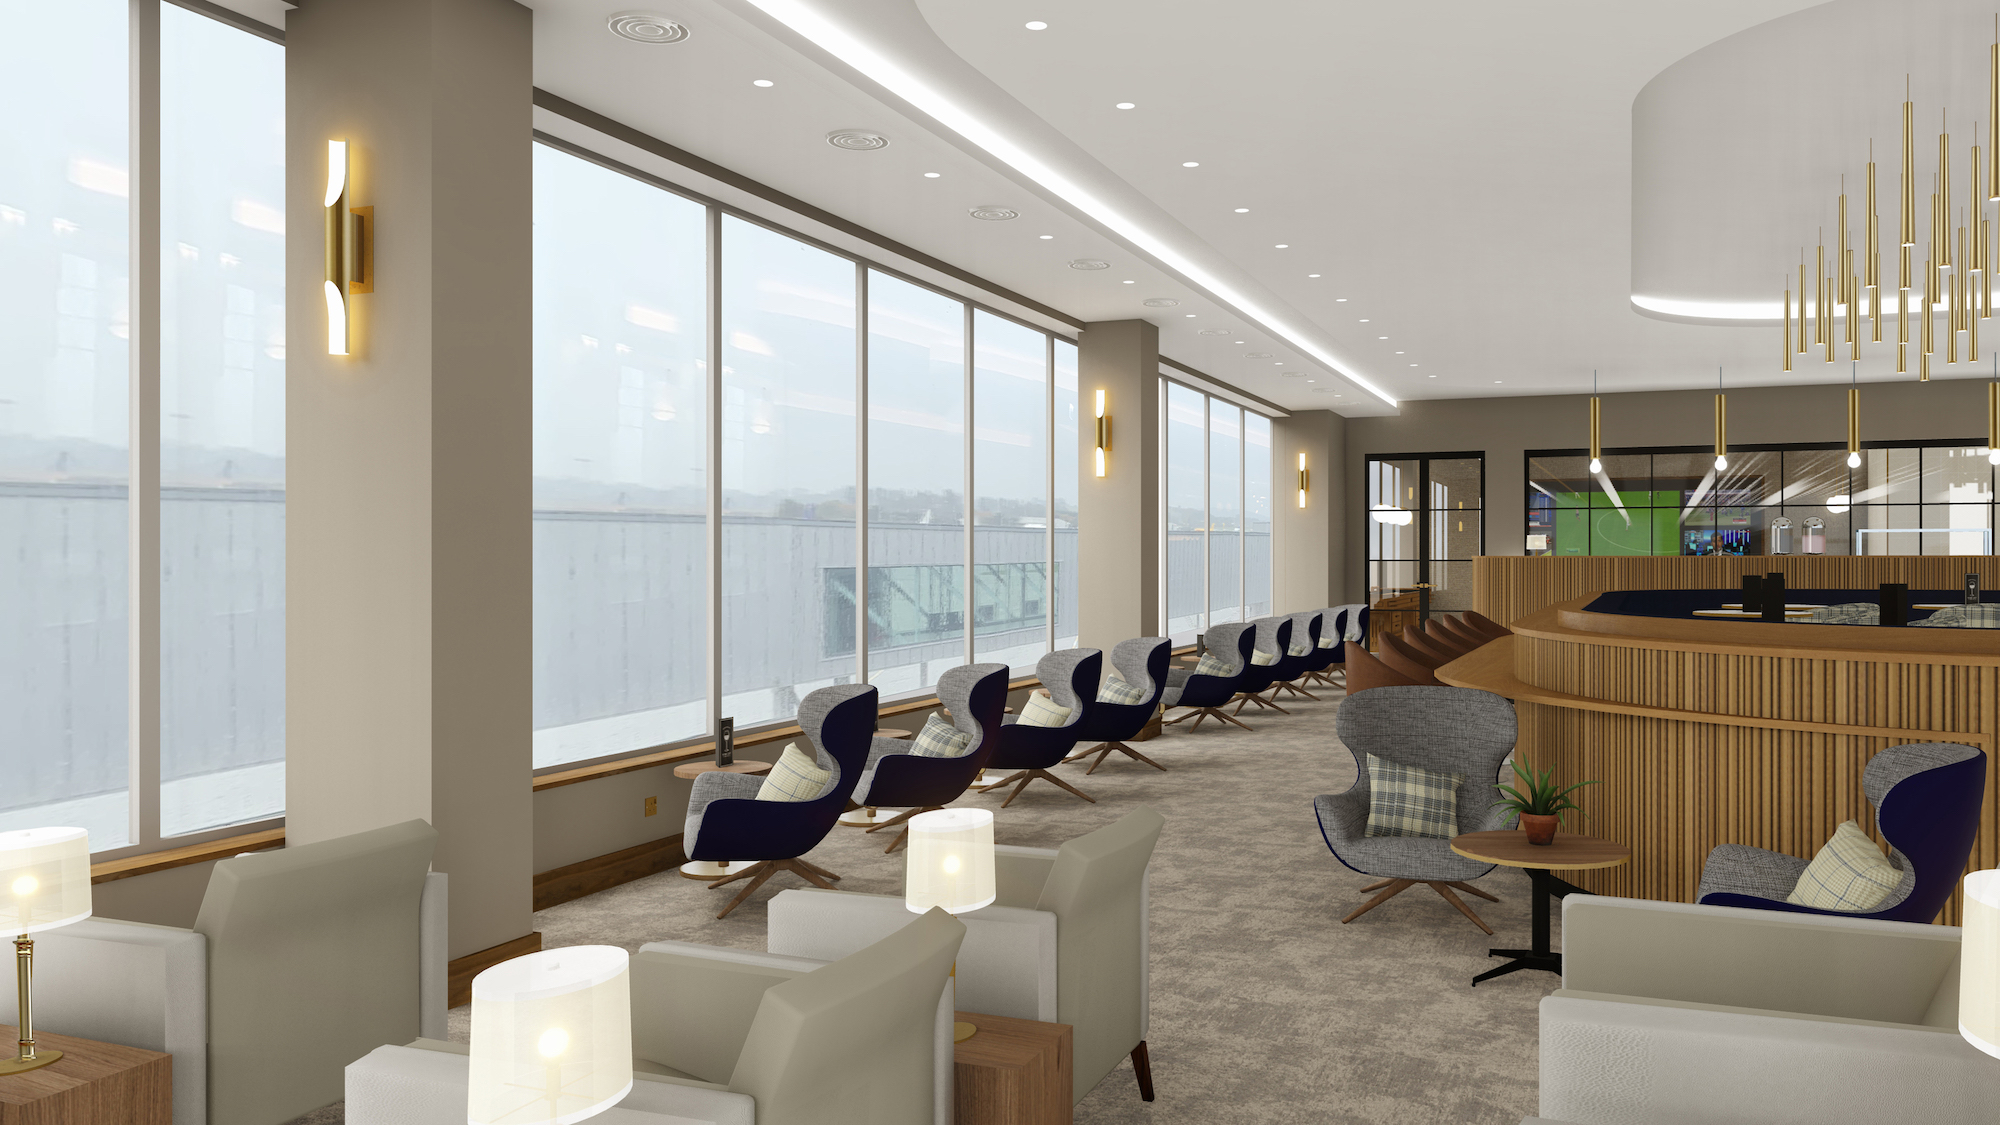 Pacific Building lands Edinburgh Airport lounge fit-out